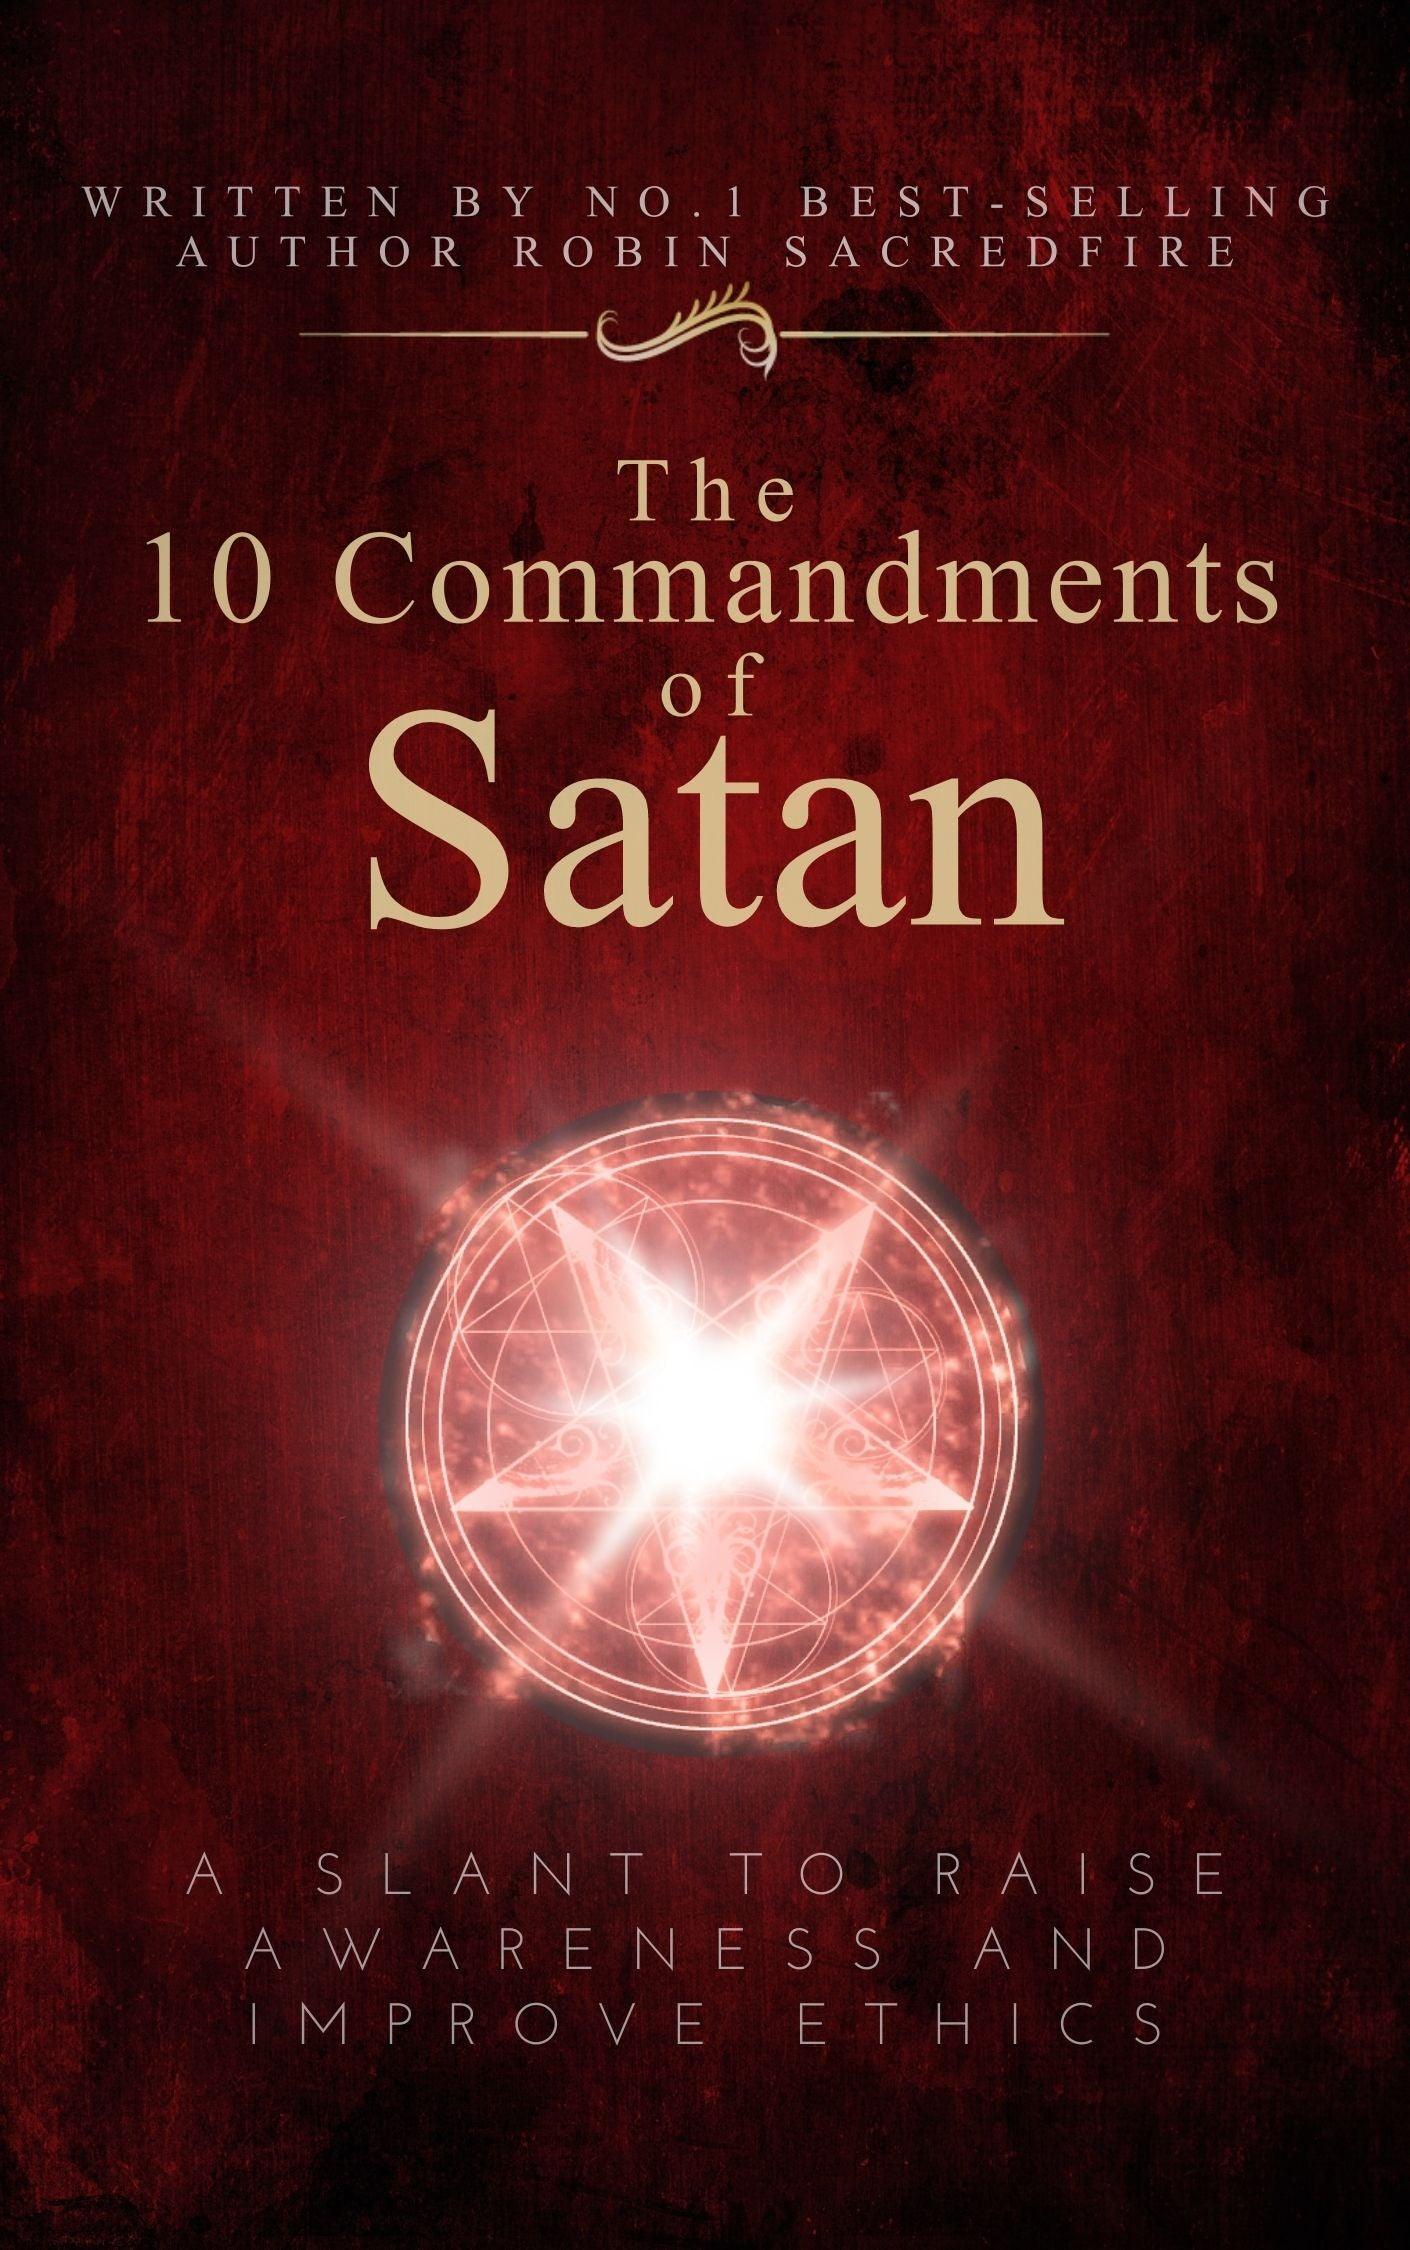 The 10 Commandments of Satan - 22 Lions